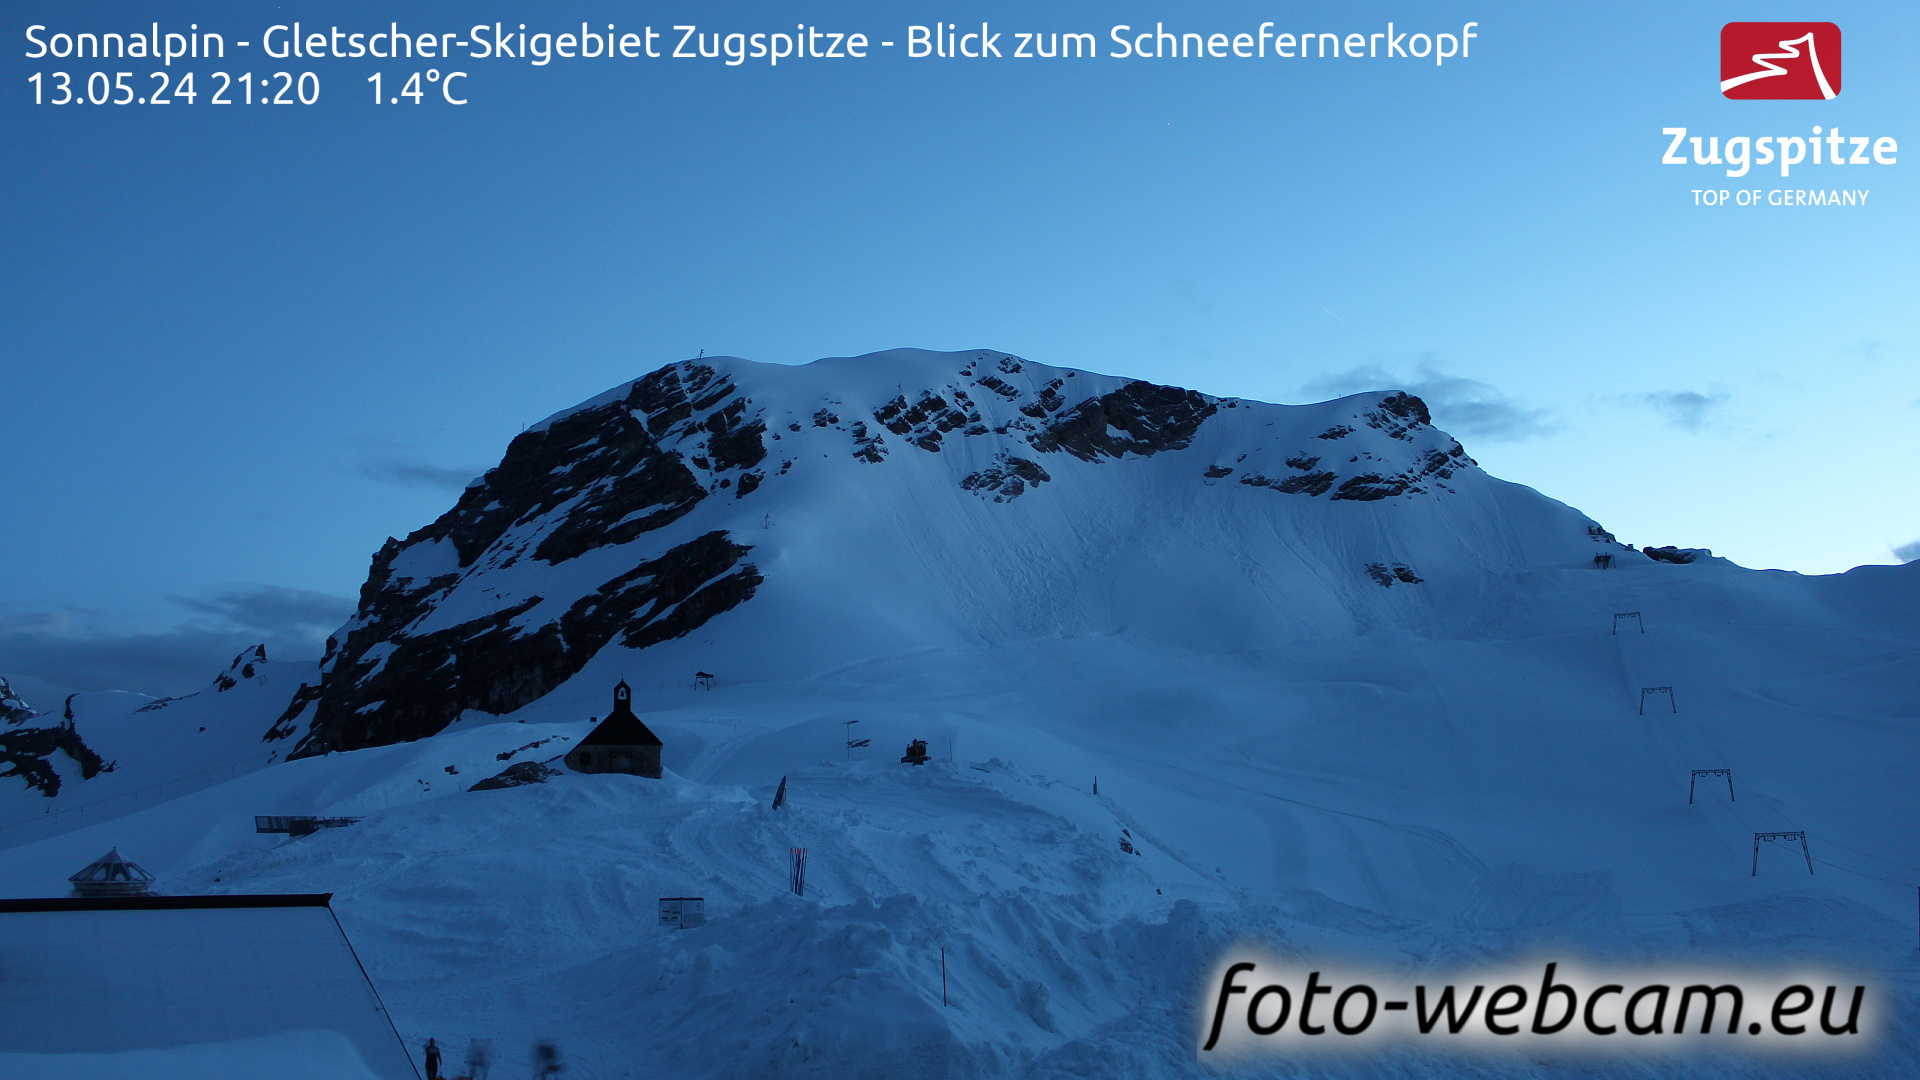 Zugspitze So. 21:24